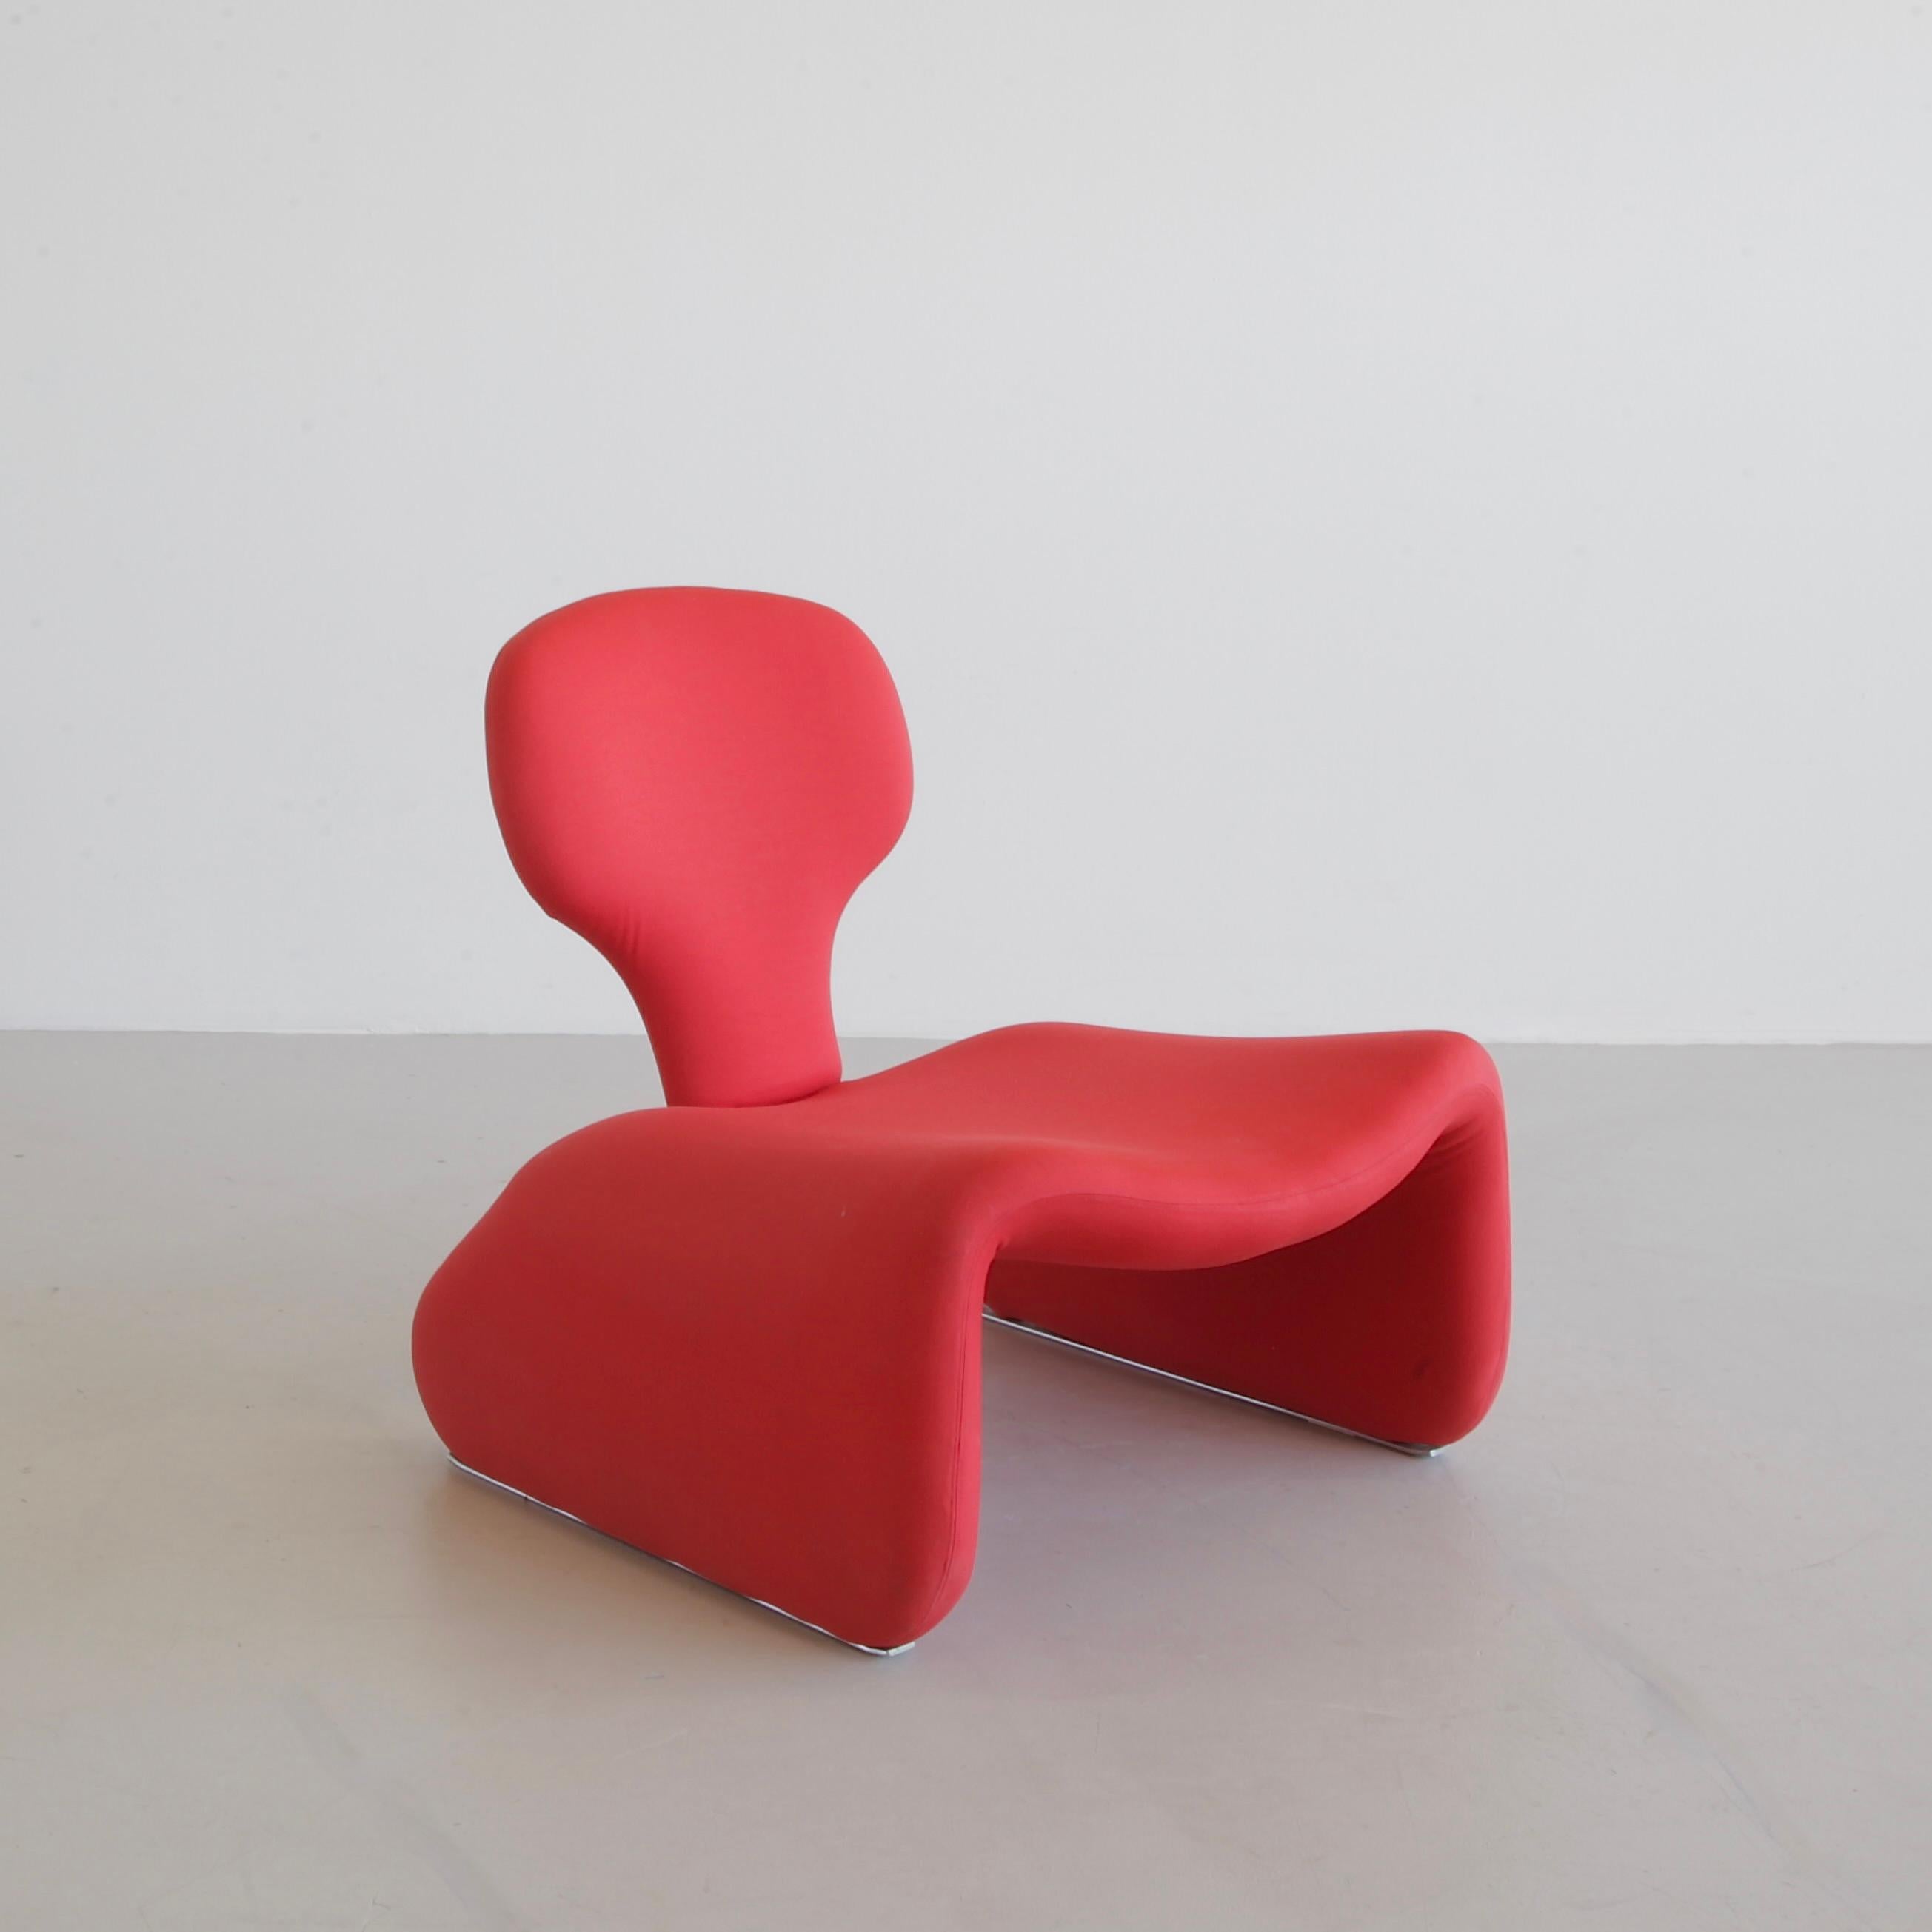 Un ensemble de la chaise et du pouf DIJNN dans le tissu extensible rouge d'origine. Construction en métal avec glissières en tissu et en métal.

La chaise Djinn fait partie d'une série de meubles Djinn conçus par le célèbre designer français Olivier